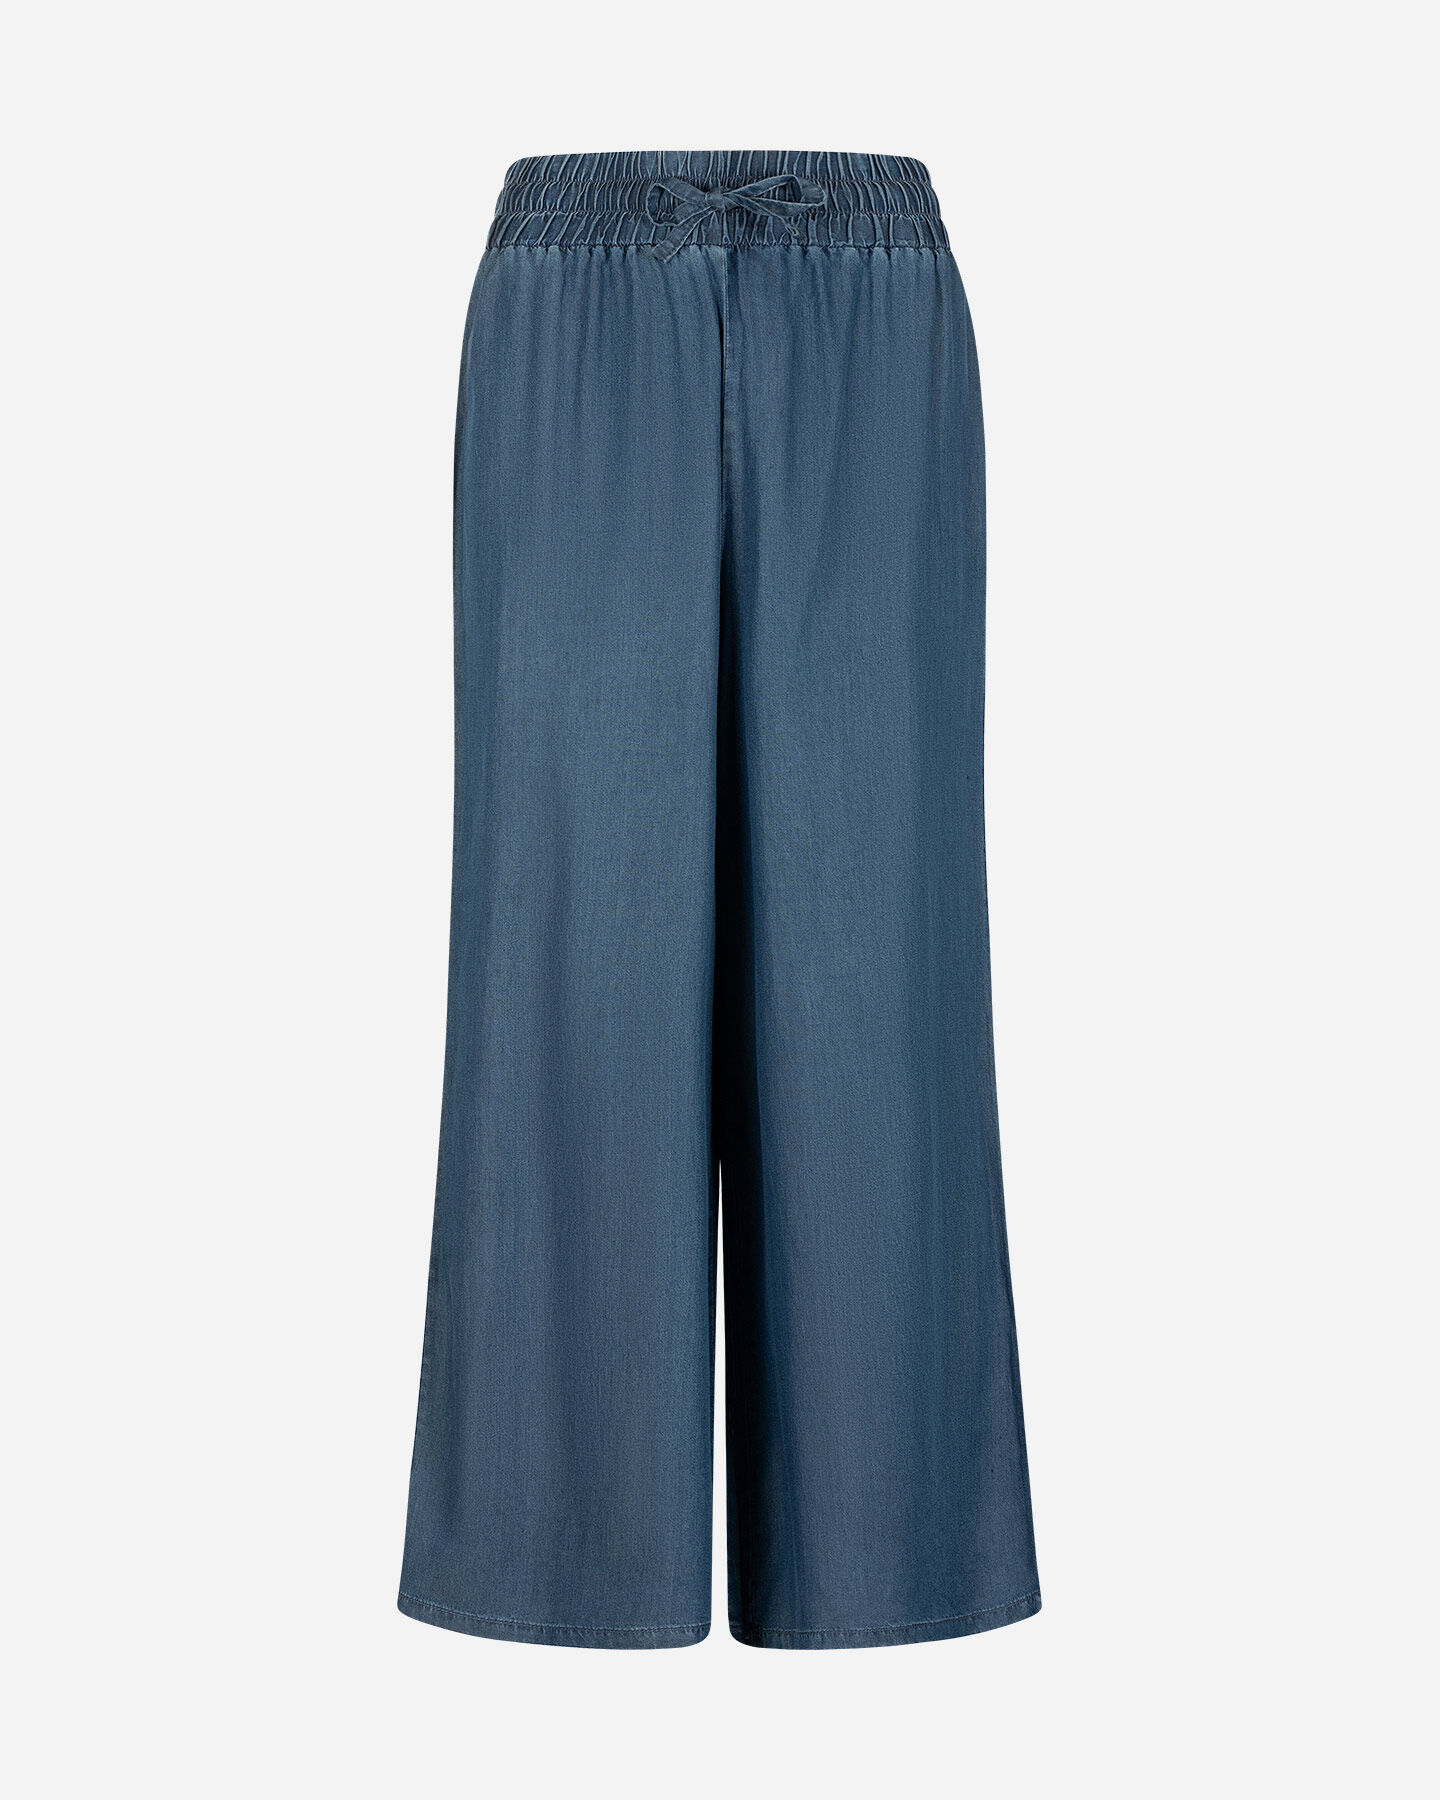  Pantalone DACK'S URBAN W S4129752|MD|XS scatto 4